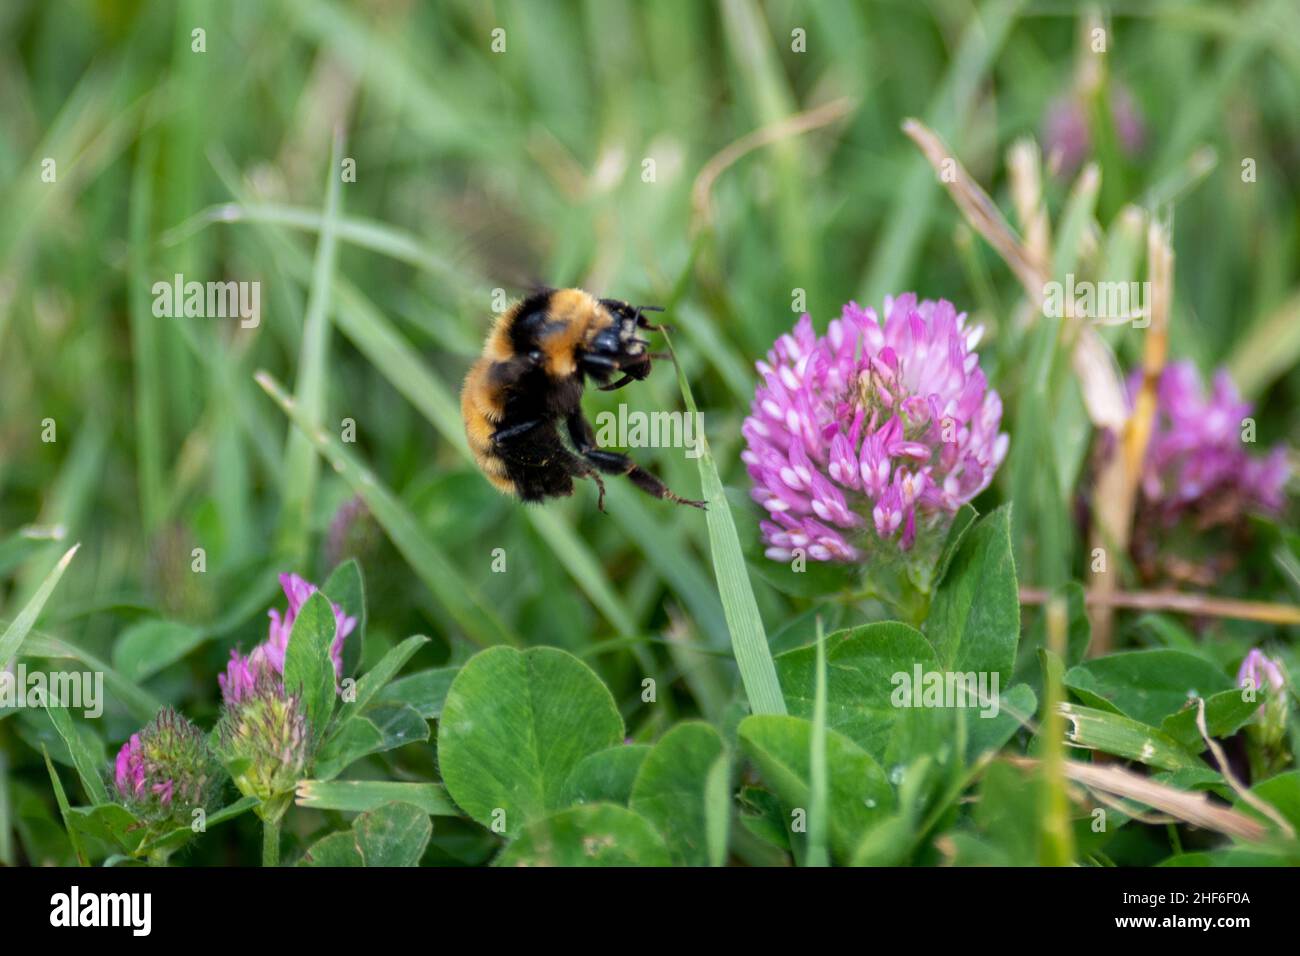 Macro d'une grande bourdon noir et jaune sur une fleur rose vive près de la lavande et de l'herbe.L'abeille possède de grands yeux et deux antennes. Banque D'Images